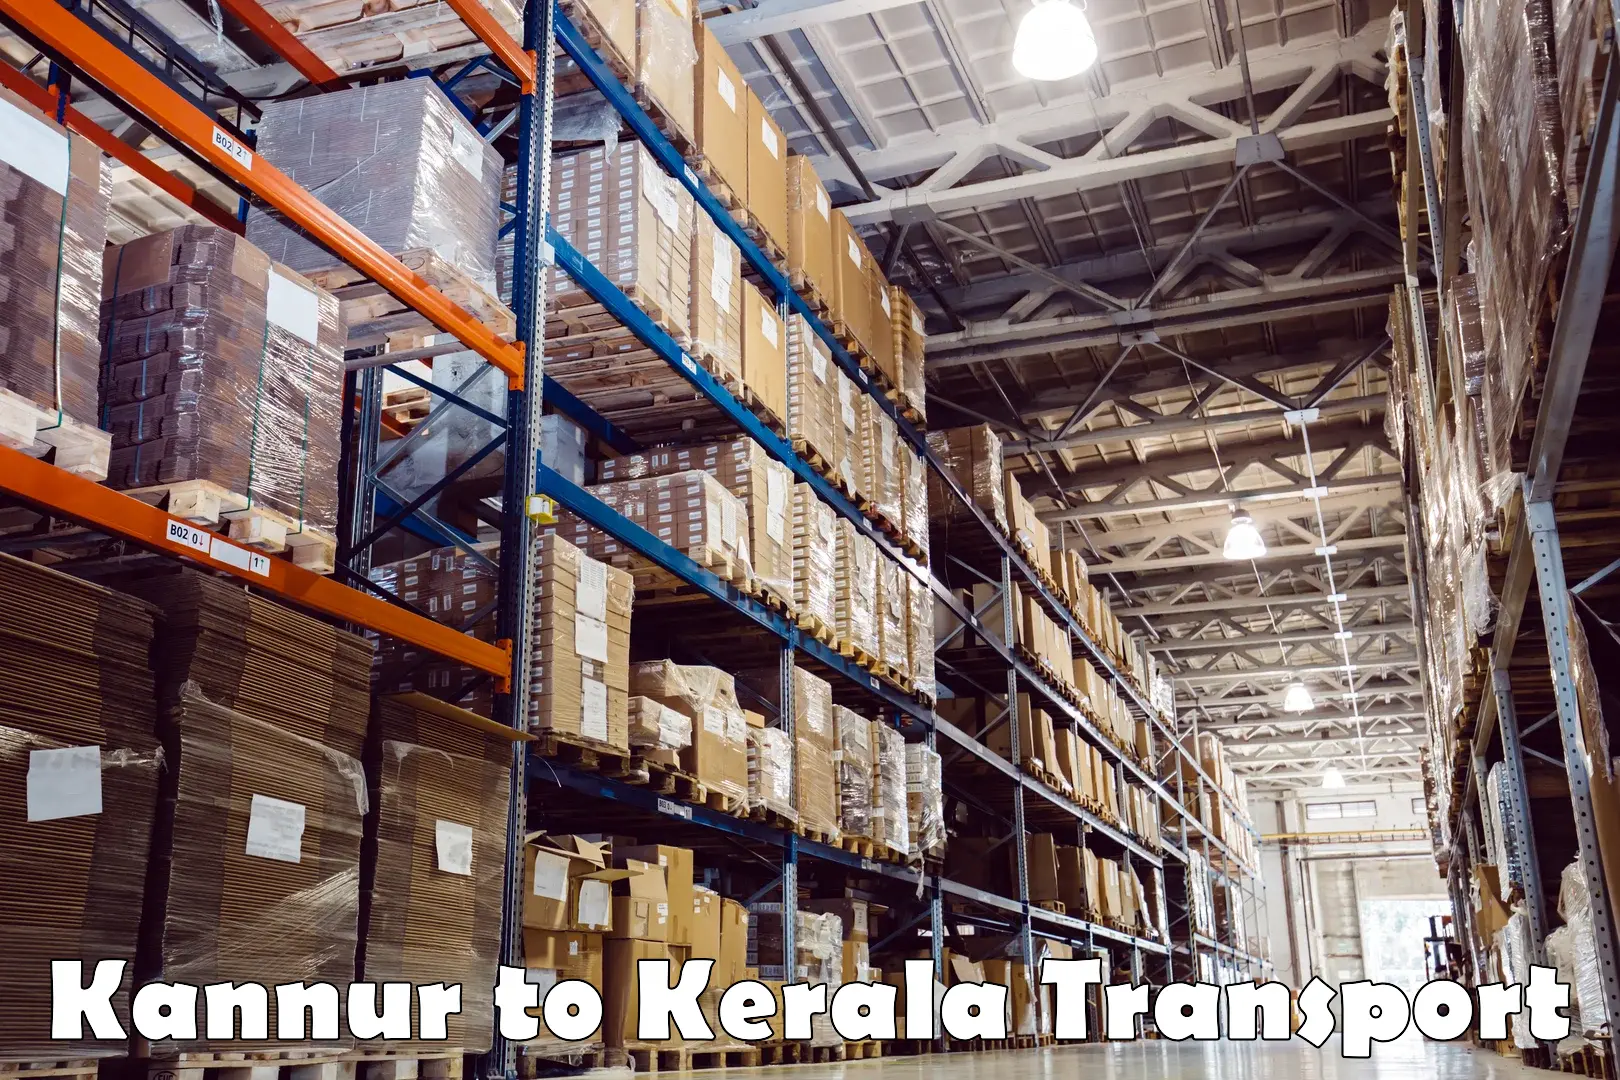 Online transport service Kannur to Kannur